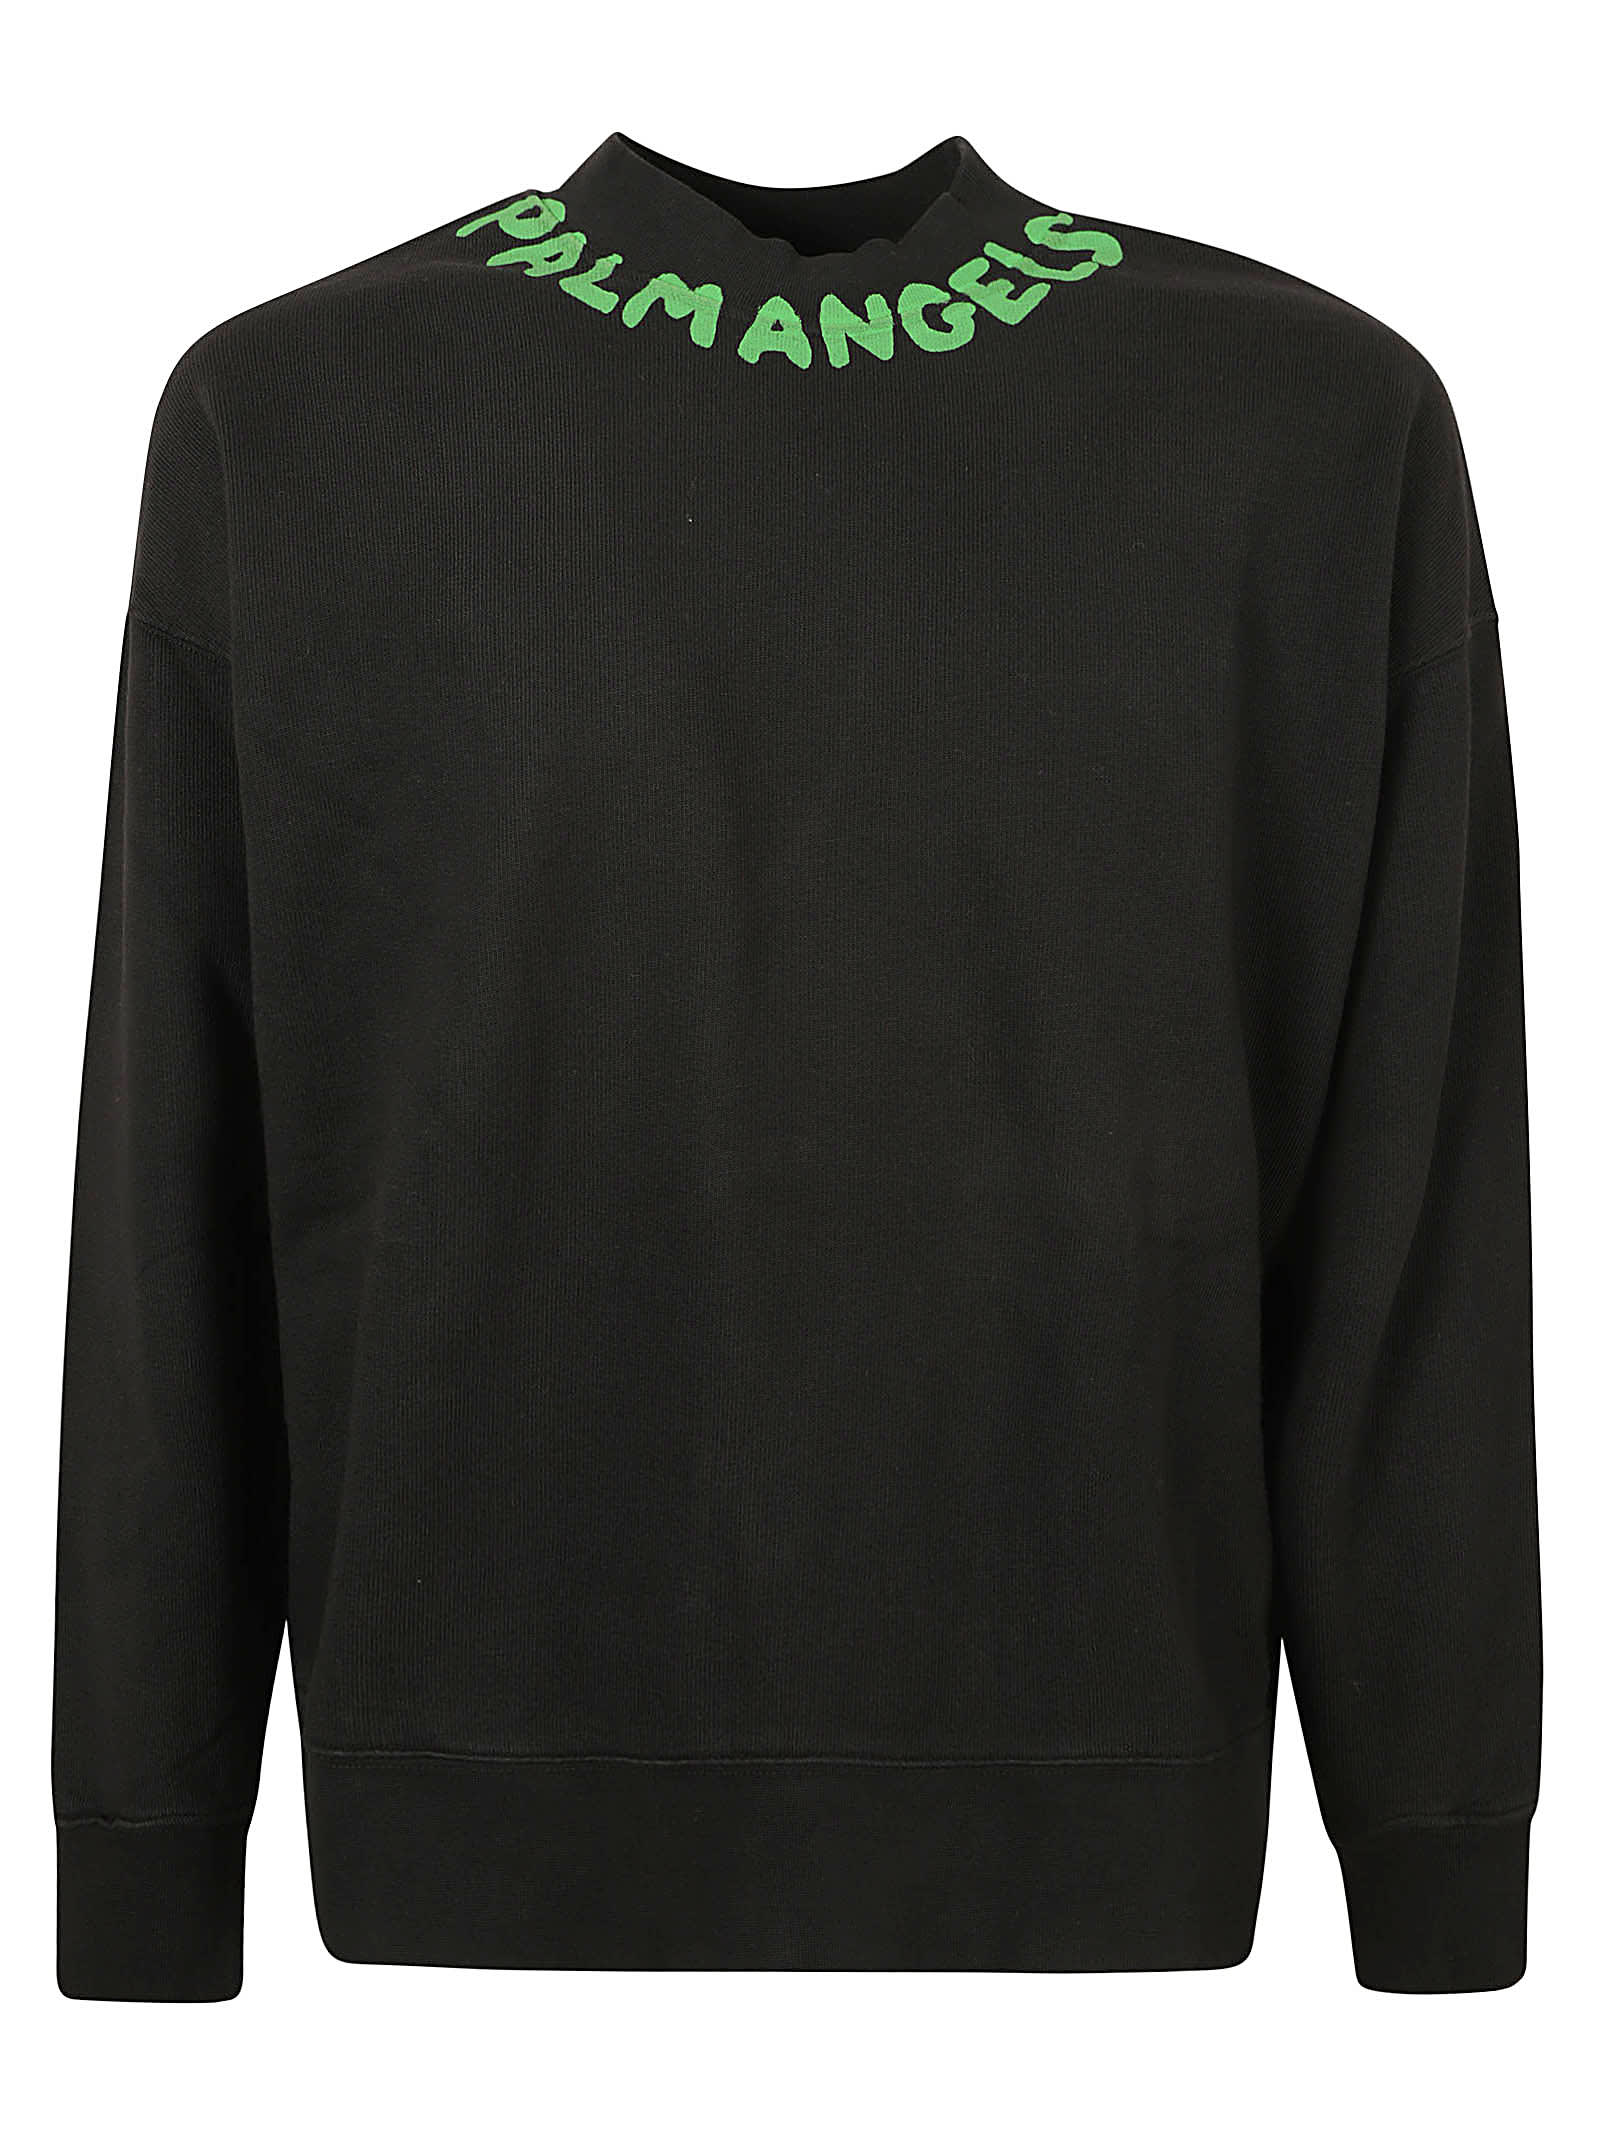 Palm Angels Seasonal Logo Sweatshirt In Black/green Fluo